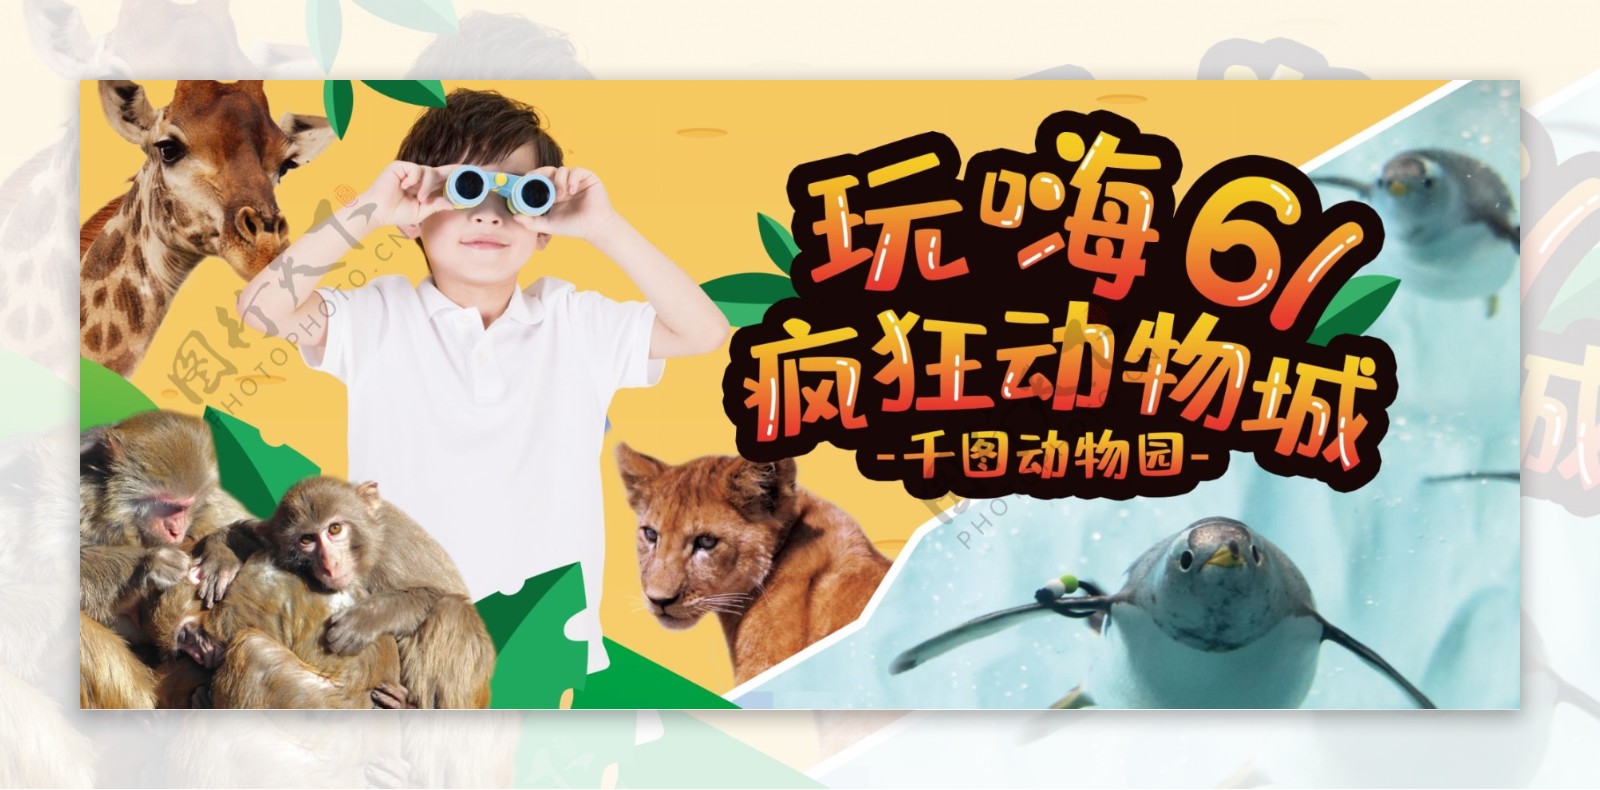 61儿童节动物园活动展板